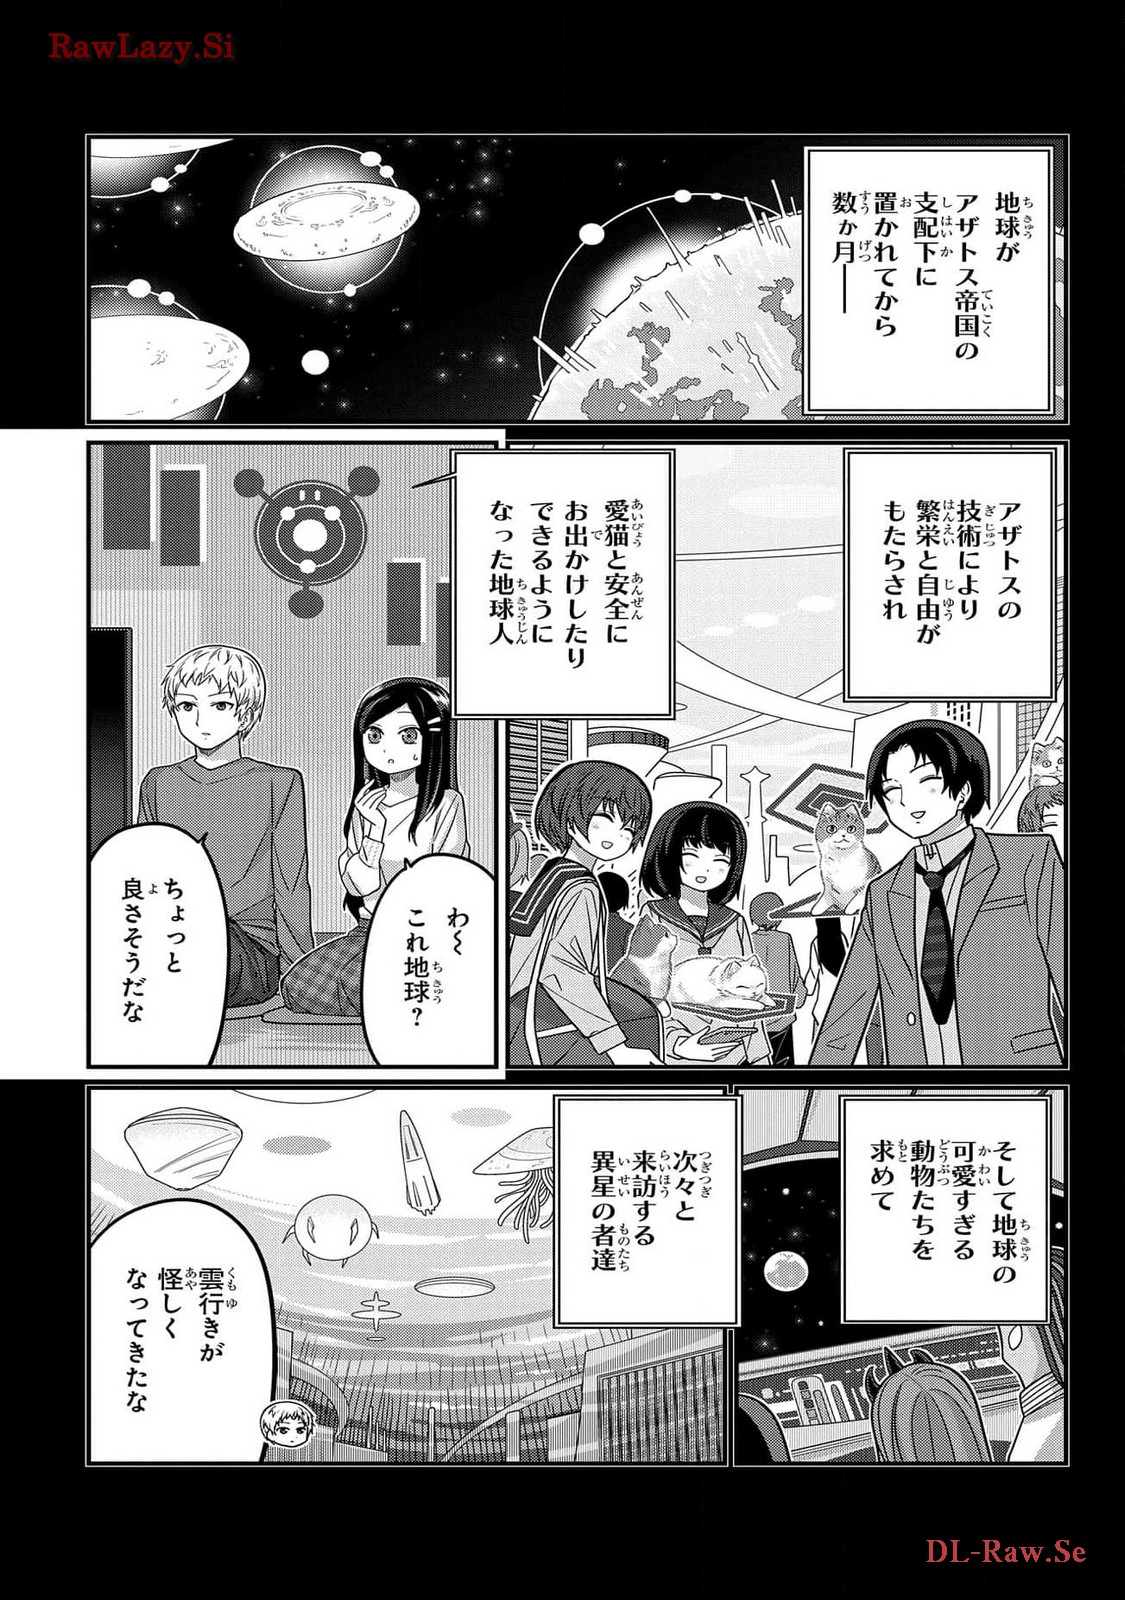 Kawaisugi Crisis - Chapter 97 - Page 15